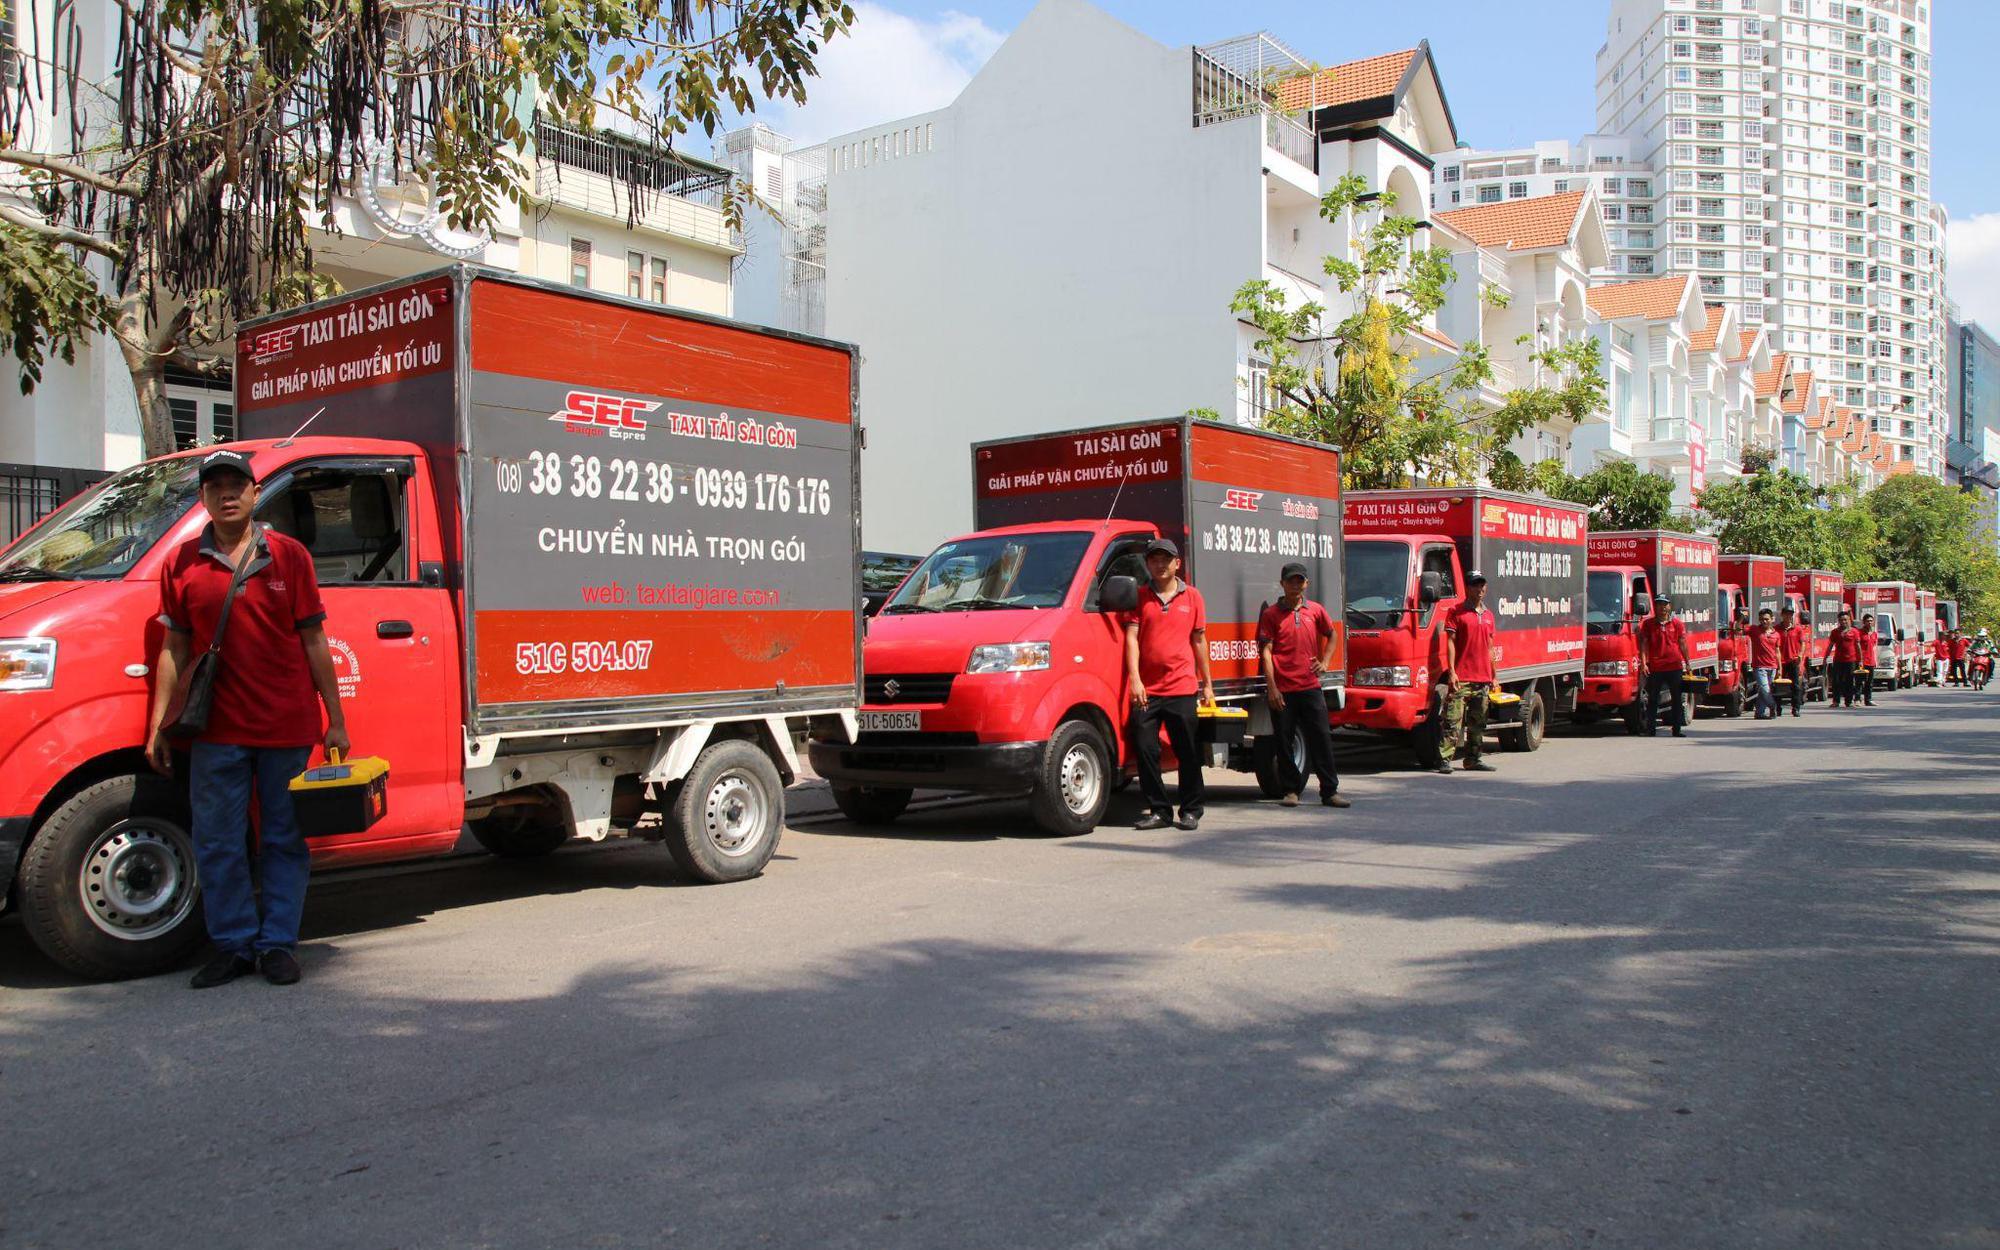 Saigon Express - Dịch vụ chuyển văn phòng trọn gói chuyên nghiệp tại TP.HCM